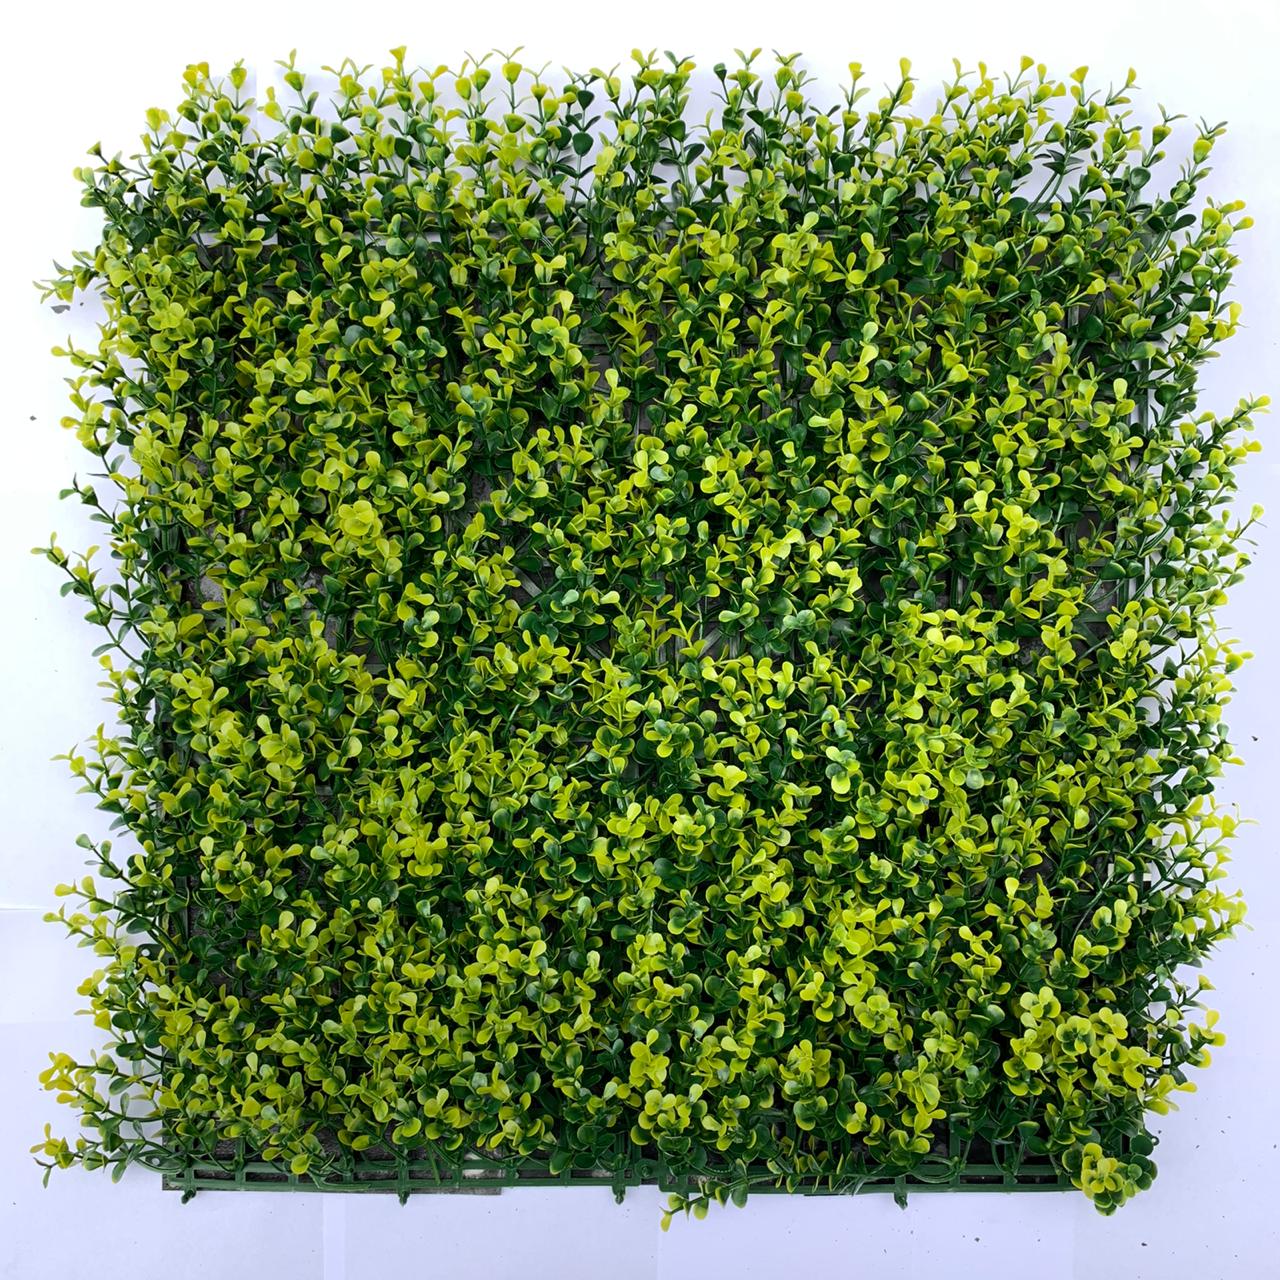 Sus pequeñas hojas en 2 tonalidades (verde oscuro y verde olivo) hacen de este follaje uno de los mas gustados. Puede aplicarse en cualquier espacio que requiera aumentar la luminosidad y darle vida.

Ideal para aplicarse en espacios de interior y exterior.


